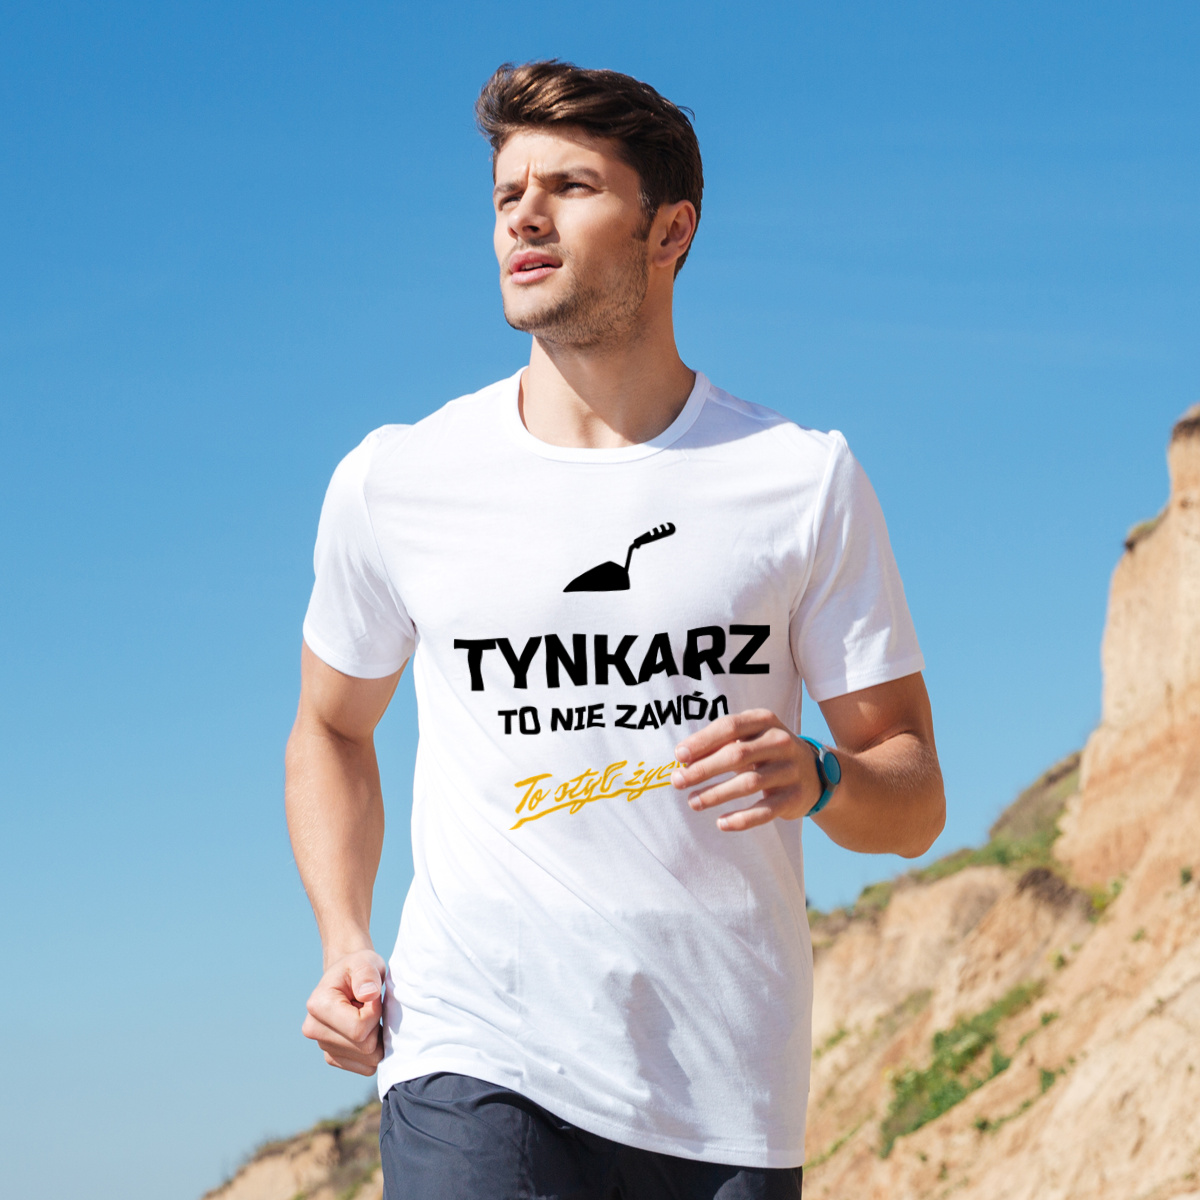 Tynkarz To Nie Zawód - To Styl Życia - Męska Koszulka Biała